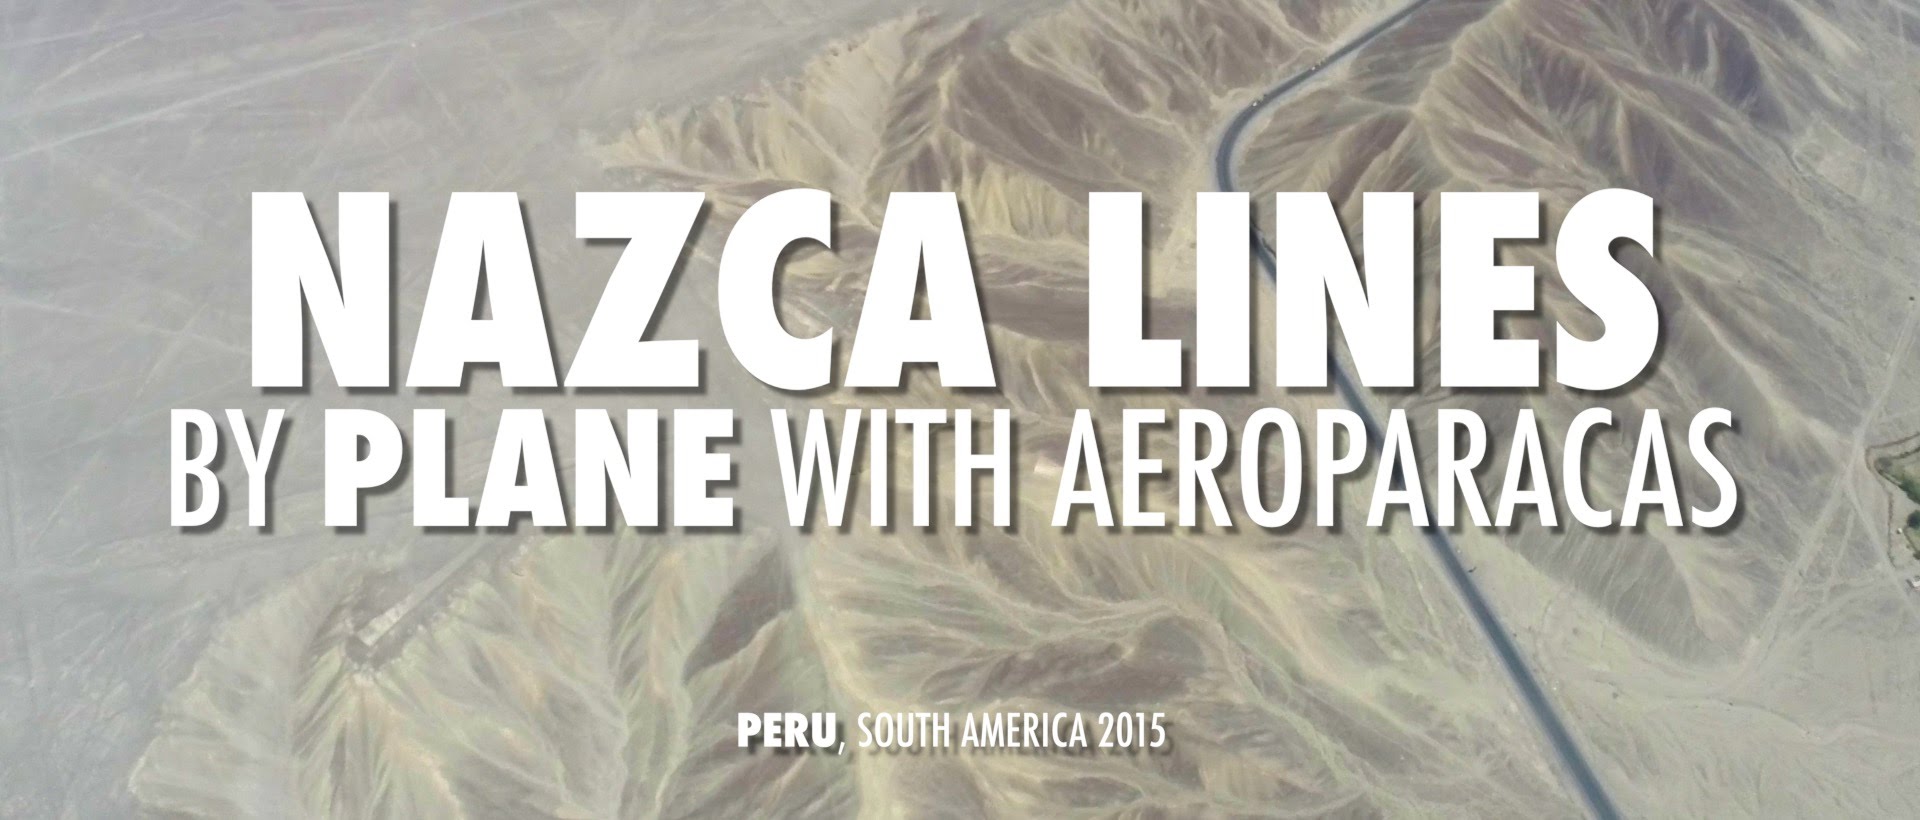 Nazca lines by plane with AeroParacas, Peru, South America